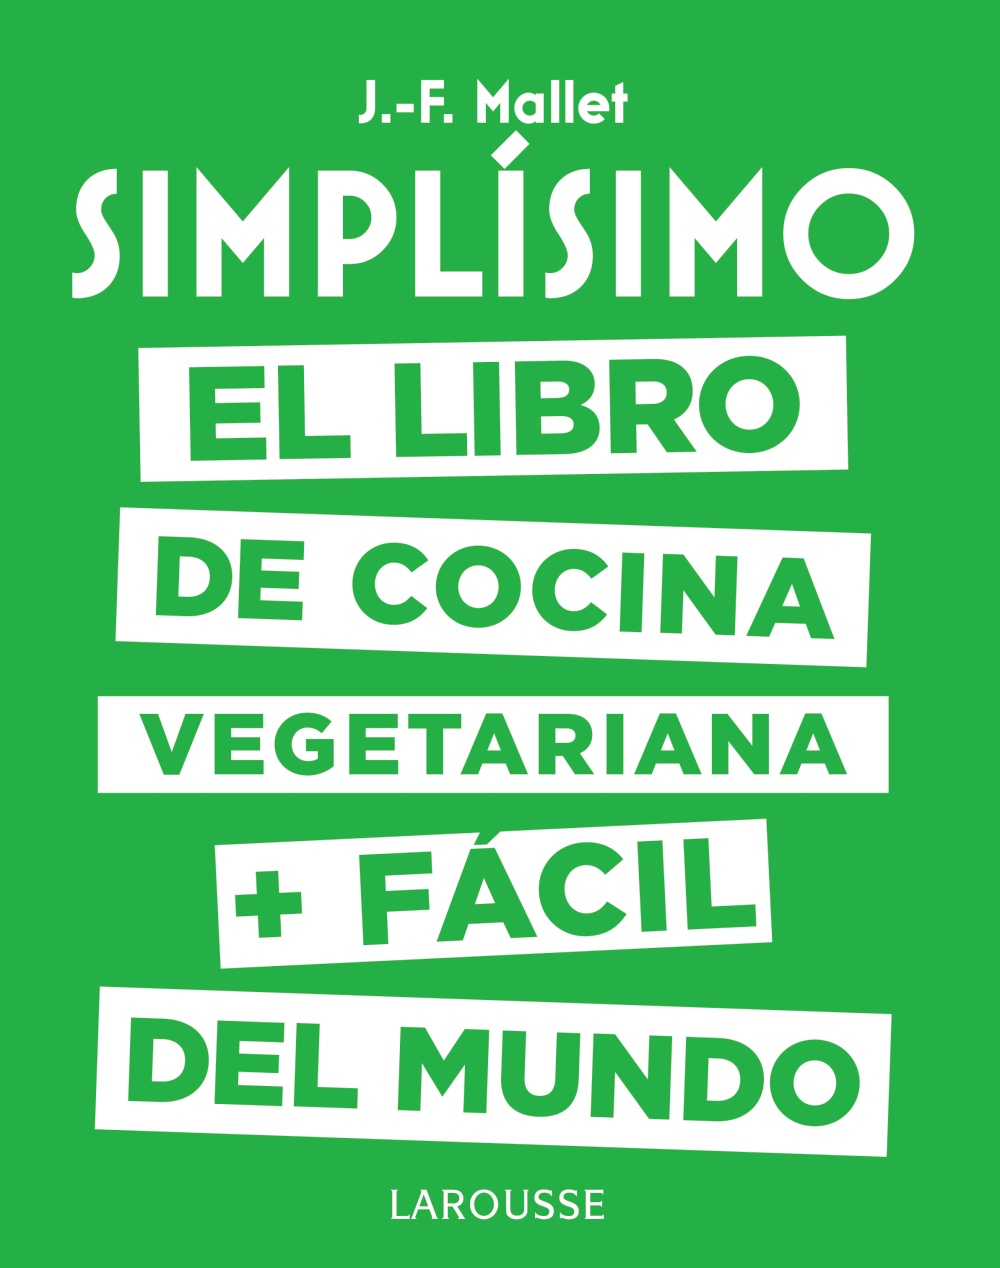 simplsimo-el-libro-de-cocina-vegetariana--fcil-del-mundo-1582803658.jpg